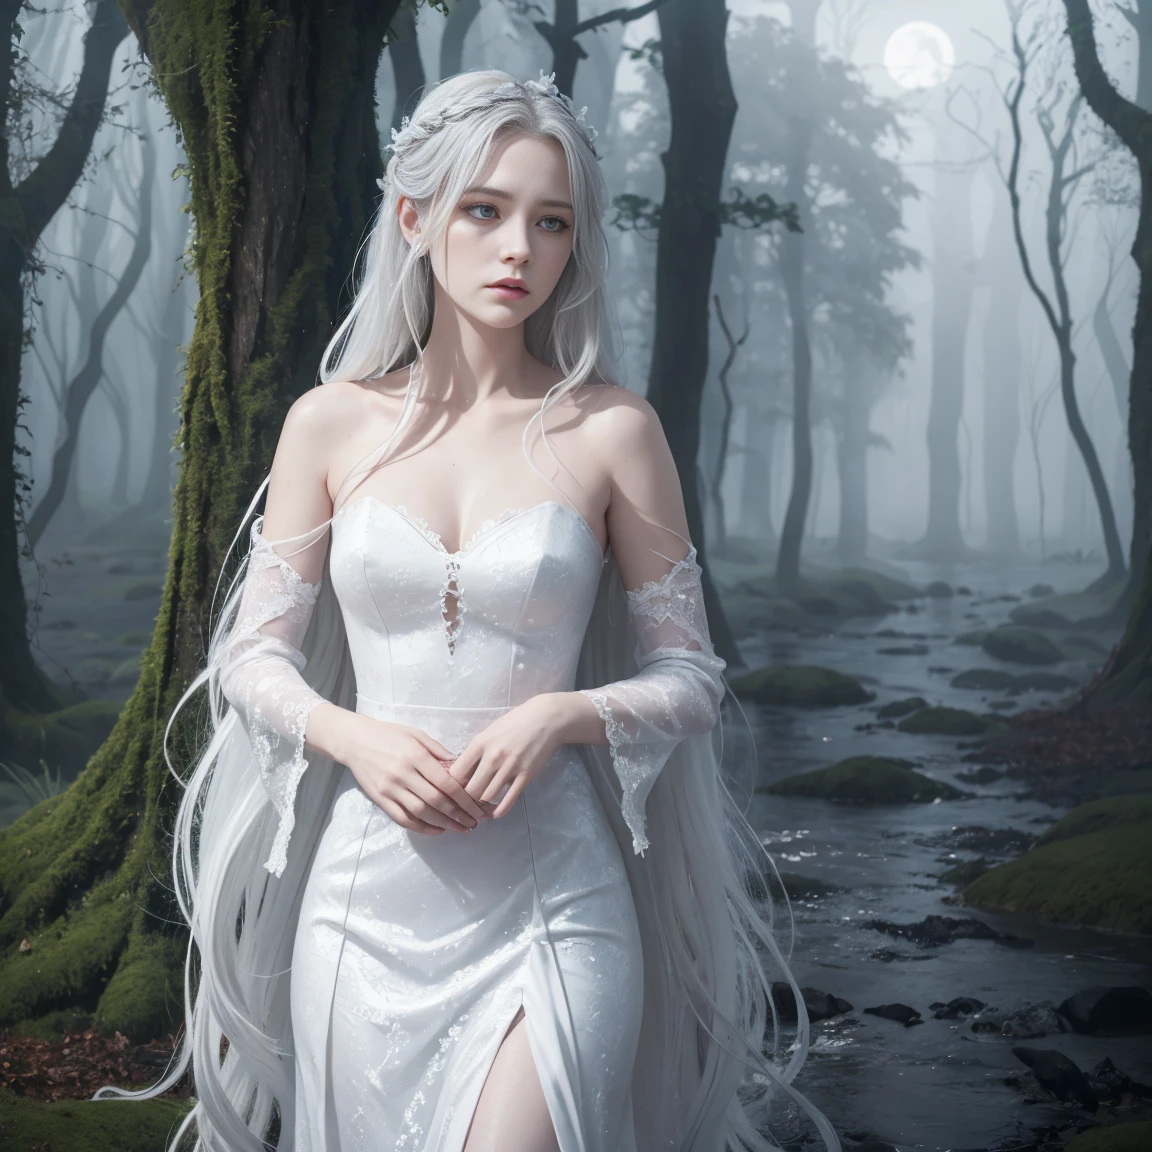 女妖的画像, 爱尔兰精神, 有着长长的银色头发和悲伤的表情. 她穿着一件飘逸的白色连衣裙，背景是一片雾蒙蒙的, 月光森林或古老城堡的诡异背景.
